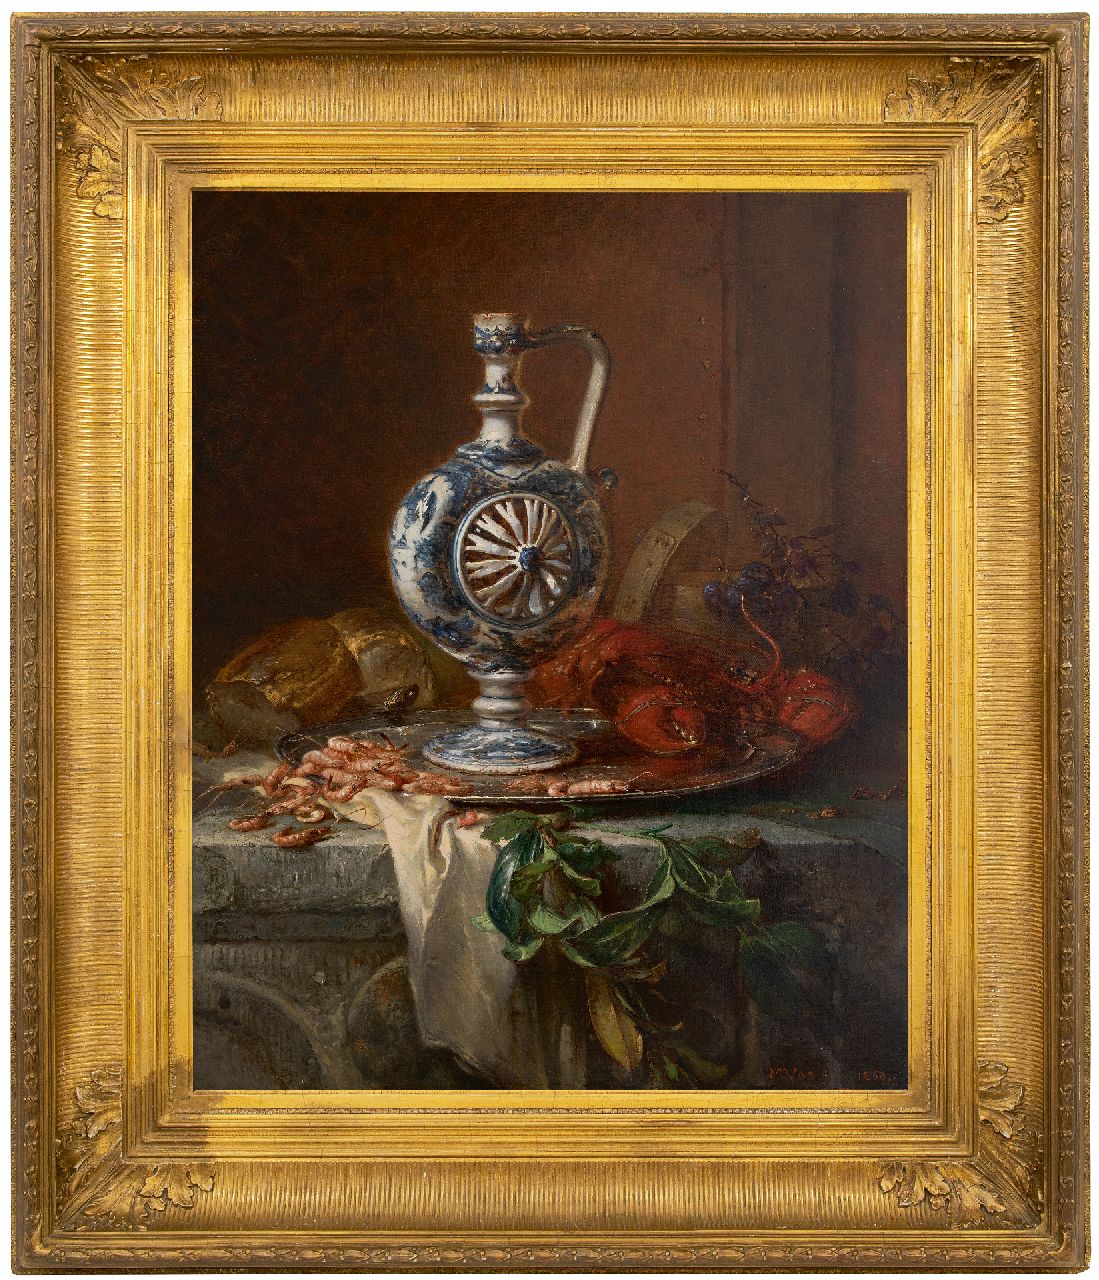 Vos M.  | Maria Vos | Schilderijen te koop aangeboden | Stilleven met aardewerken fopkan, tinnen schaal, kreeft en garnalen, olieverf op doek 84,4 x 67,3 cm, gesigneerd rechtsonder en gedateerd Jan. 1868